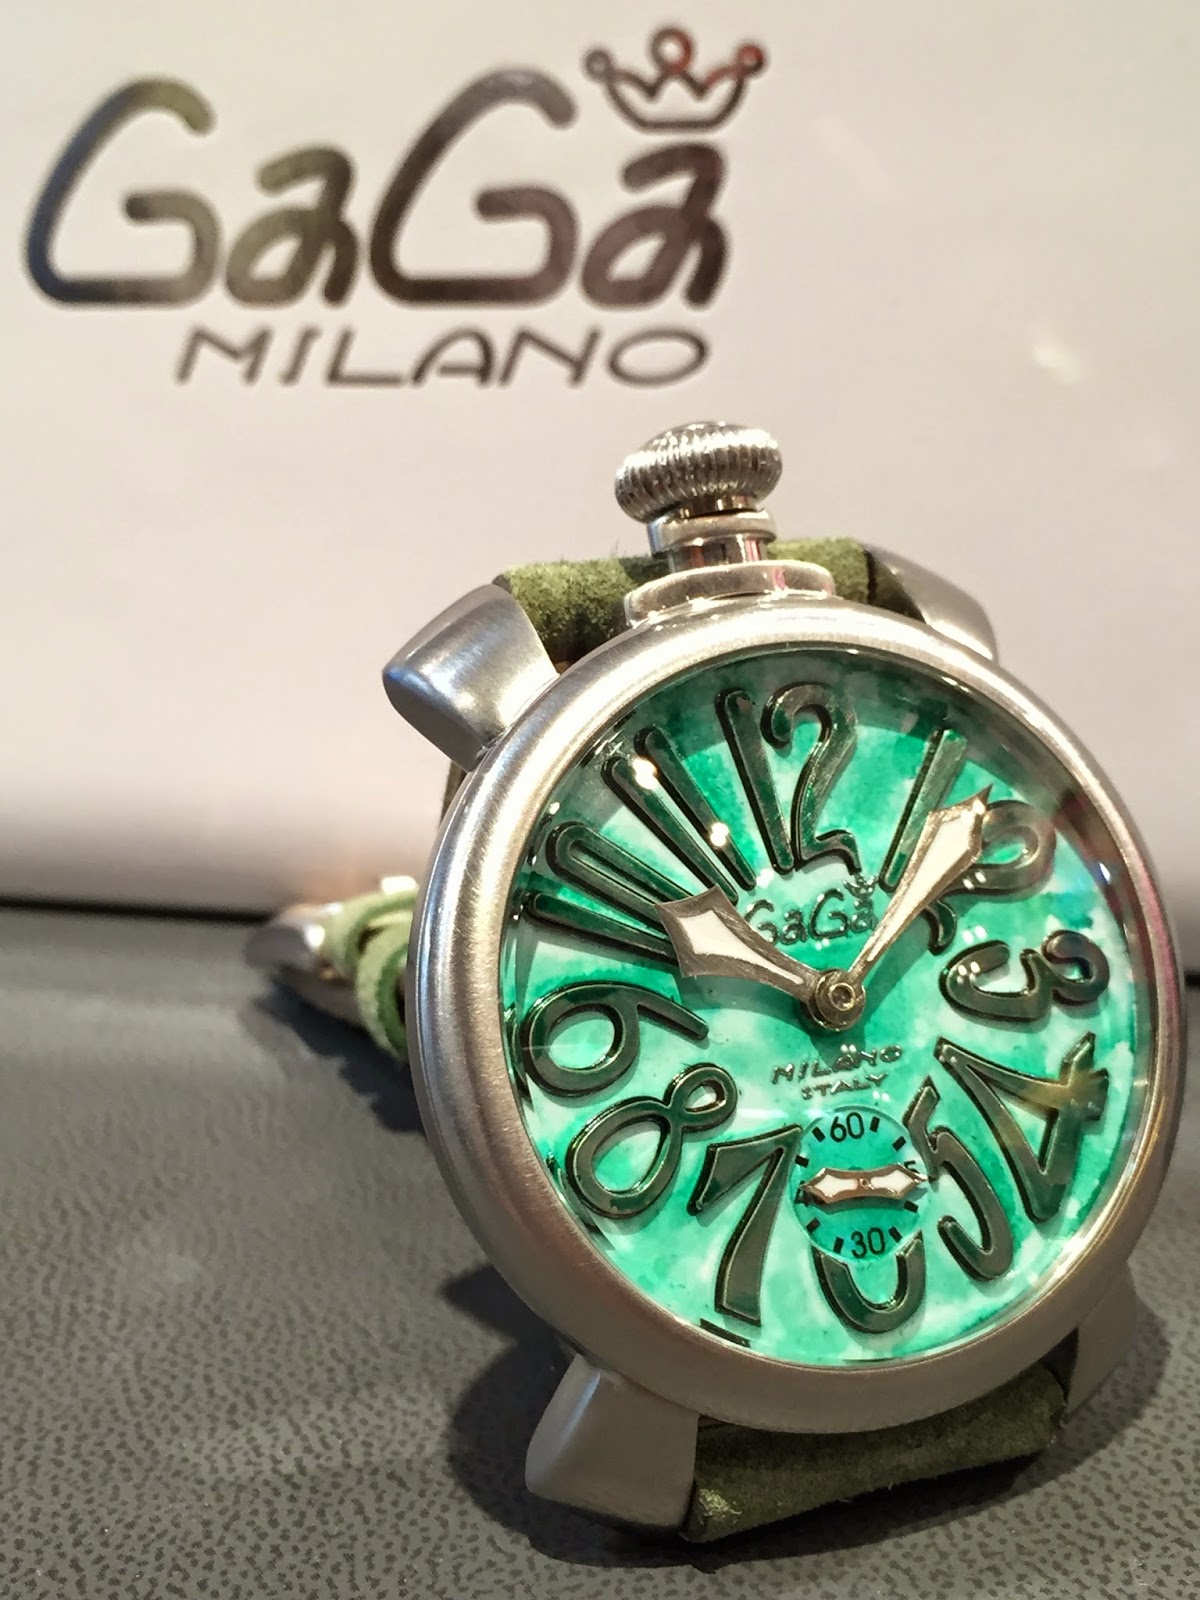 ガガミラノ GaGa MILANO 腕時計 (GaGa MILANO/アナログ時計) 88653303+